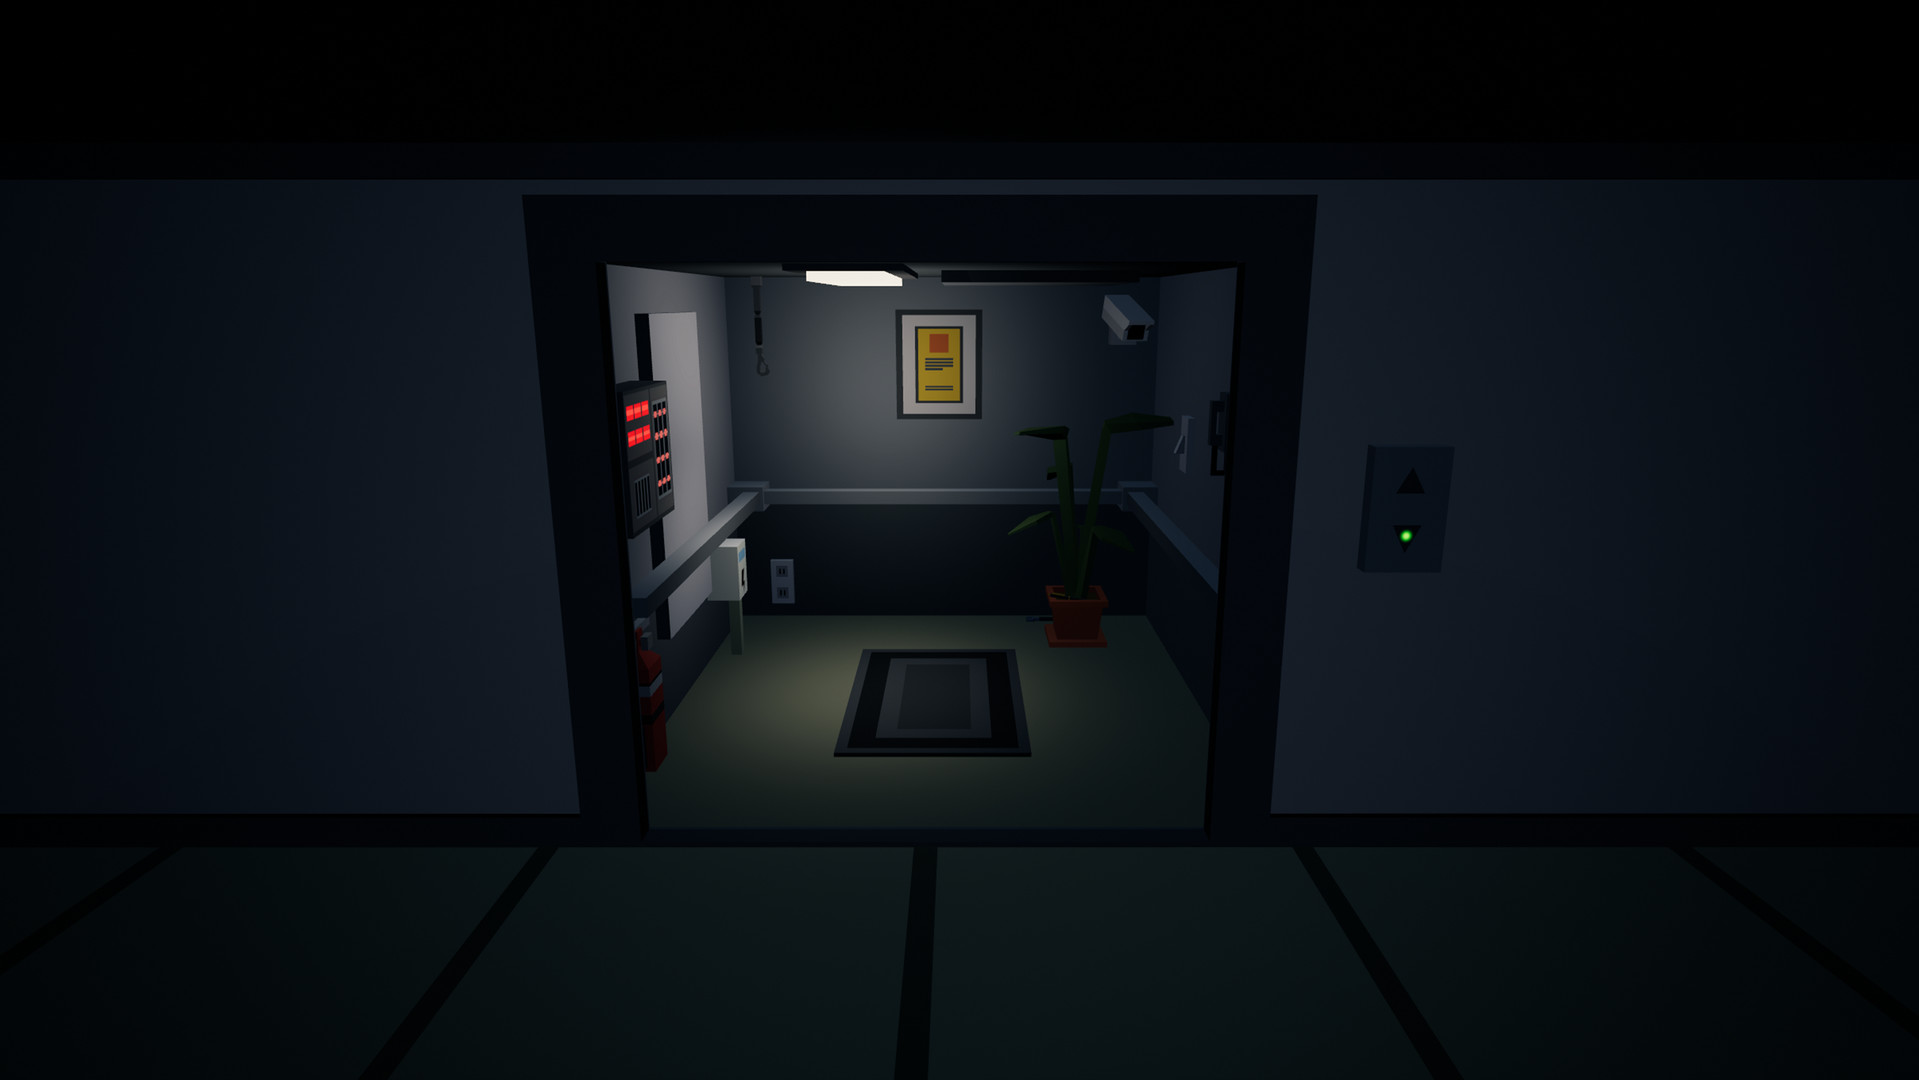 Прохождение игры the secret elevator. Игра в лифт. Виар игра лифте. Примеры горизонтального системного лифта в игре. Stray game screenshots Elevator.